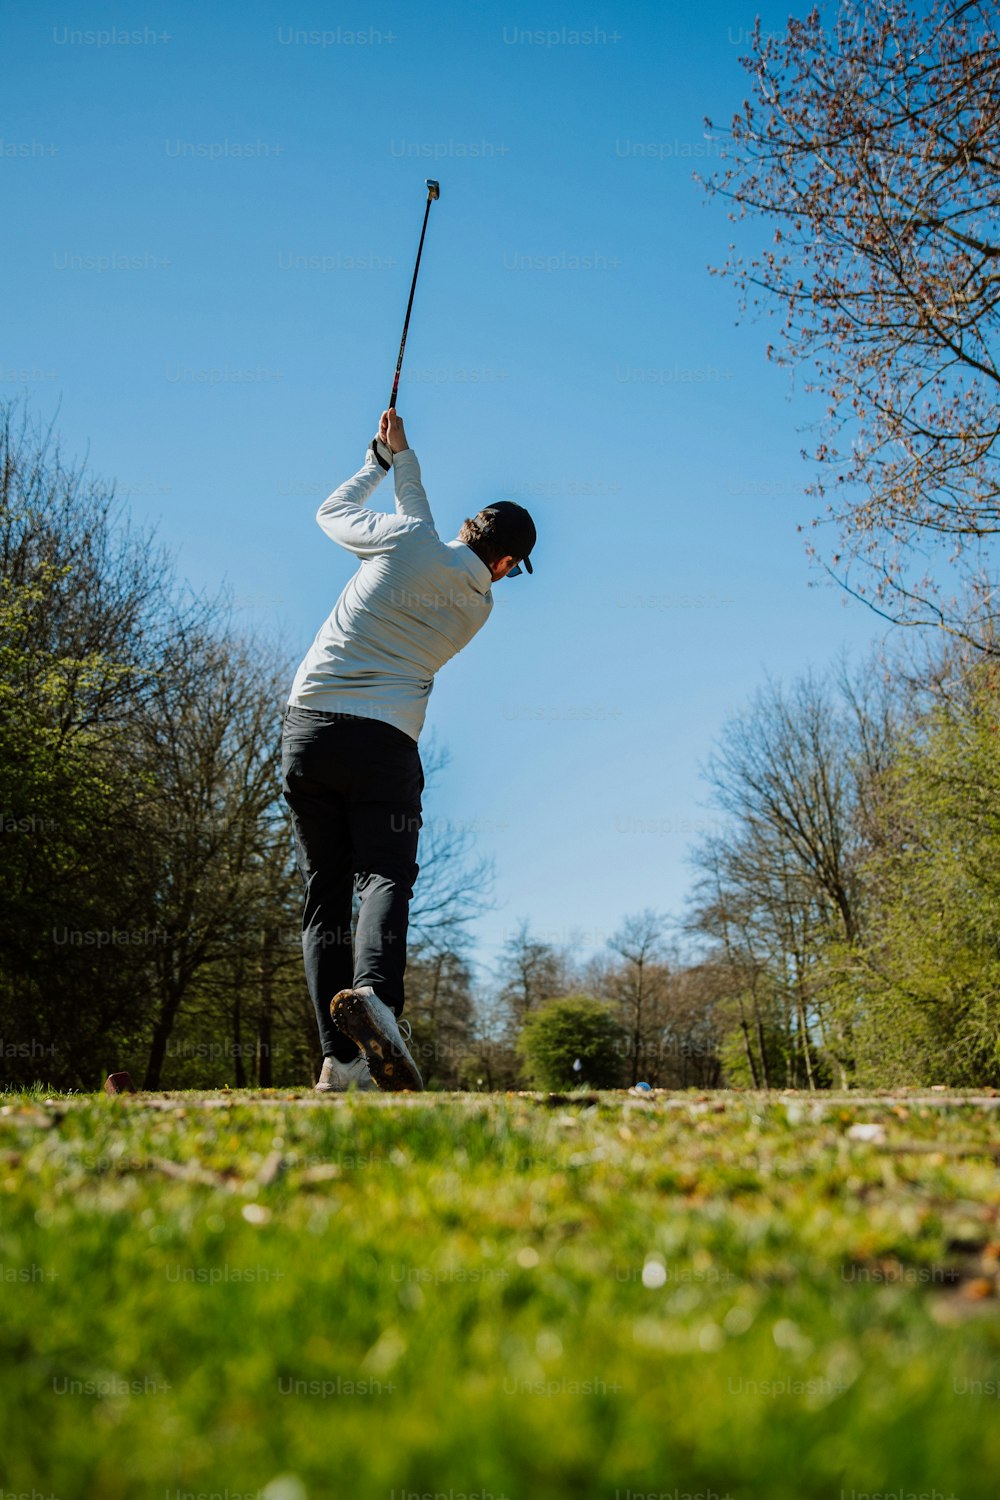 a man swinging a golf club in a park